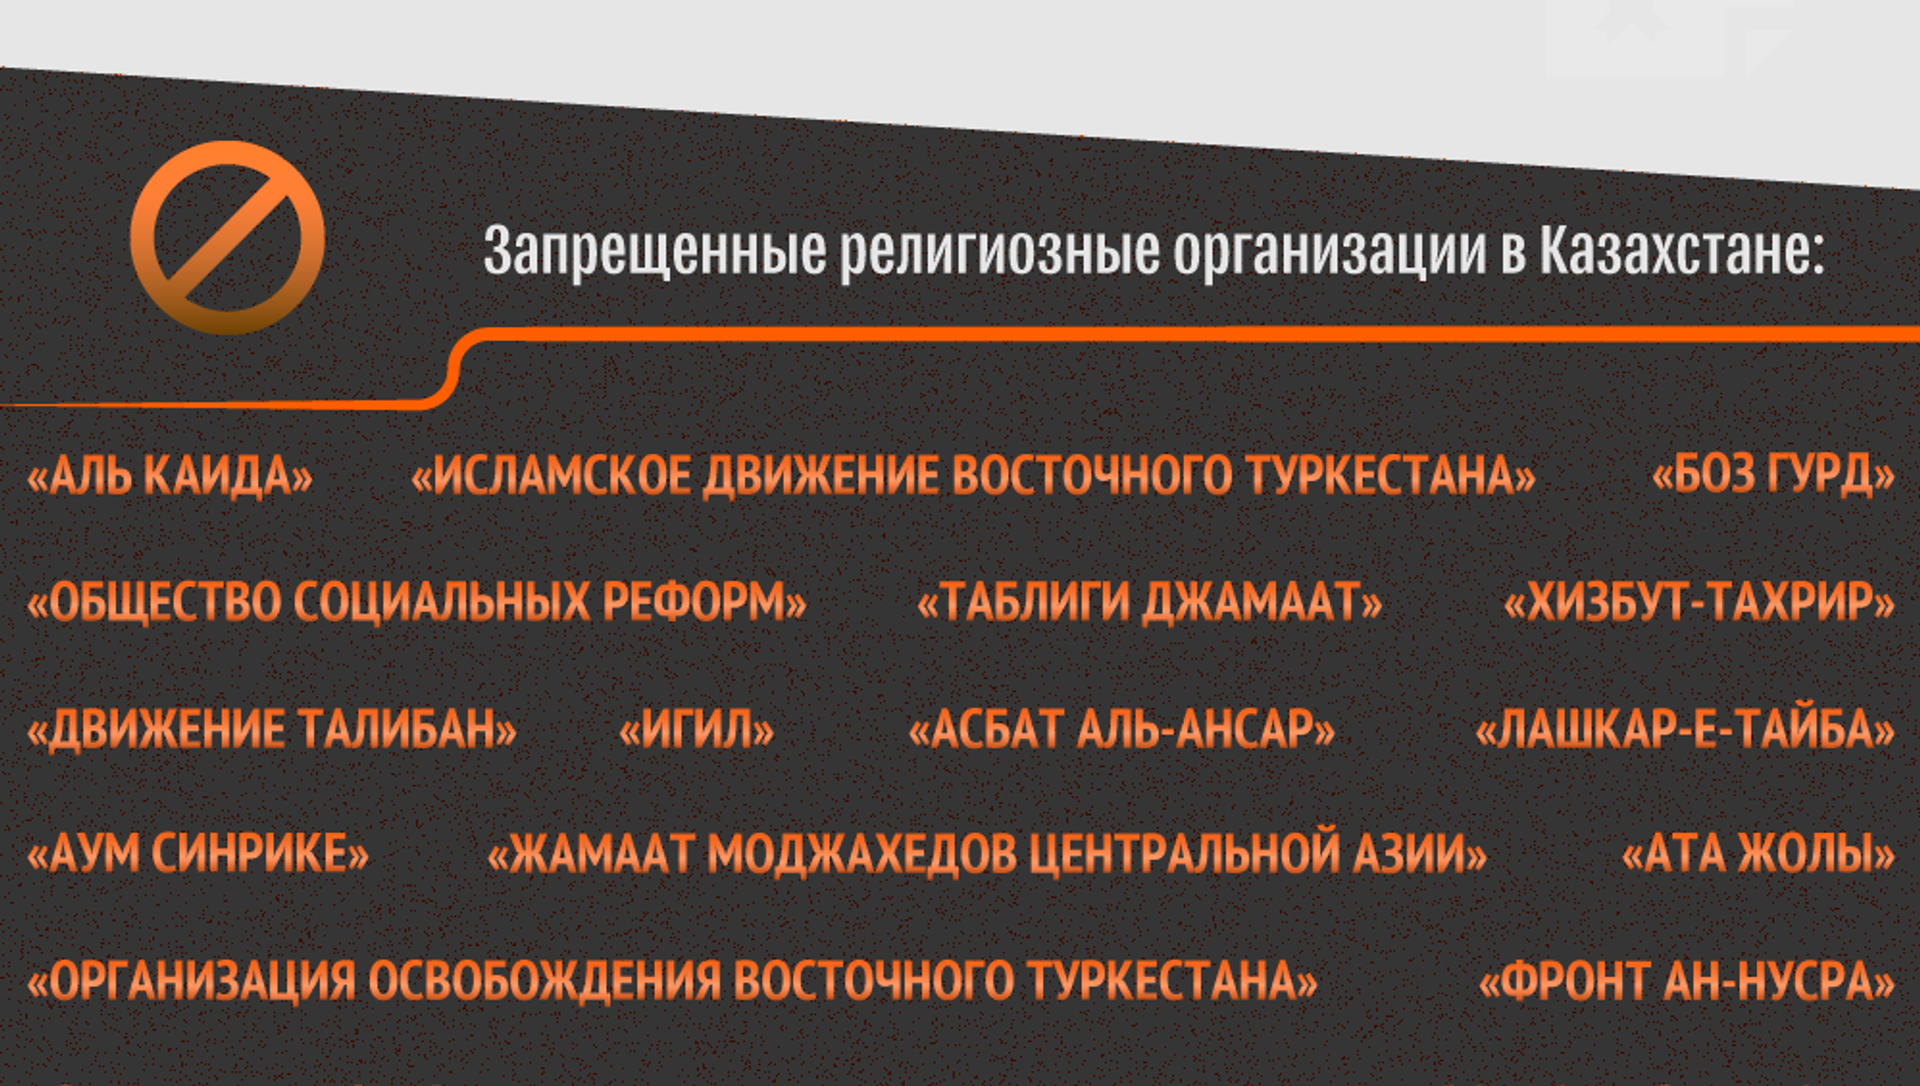 Запрещенные религиозные организации. Религиозное объединение запрещено. Запрещенные религиозные организации в России список. Запрещенные религиозные организации в Казахстане.